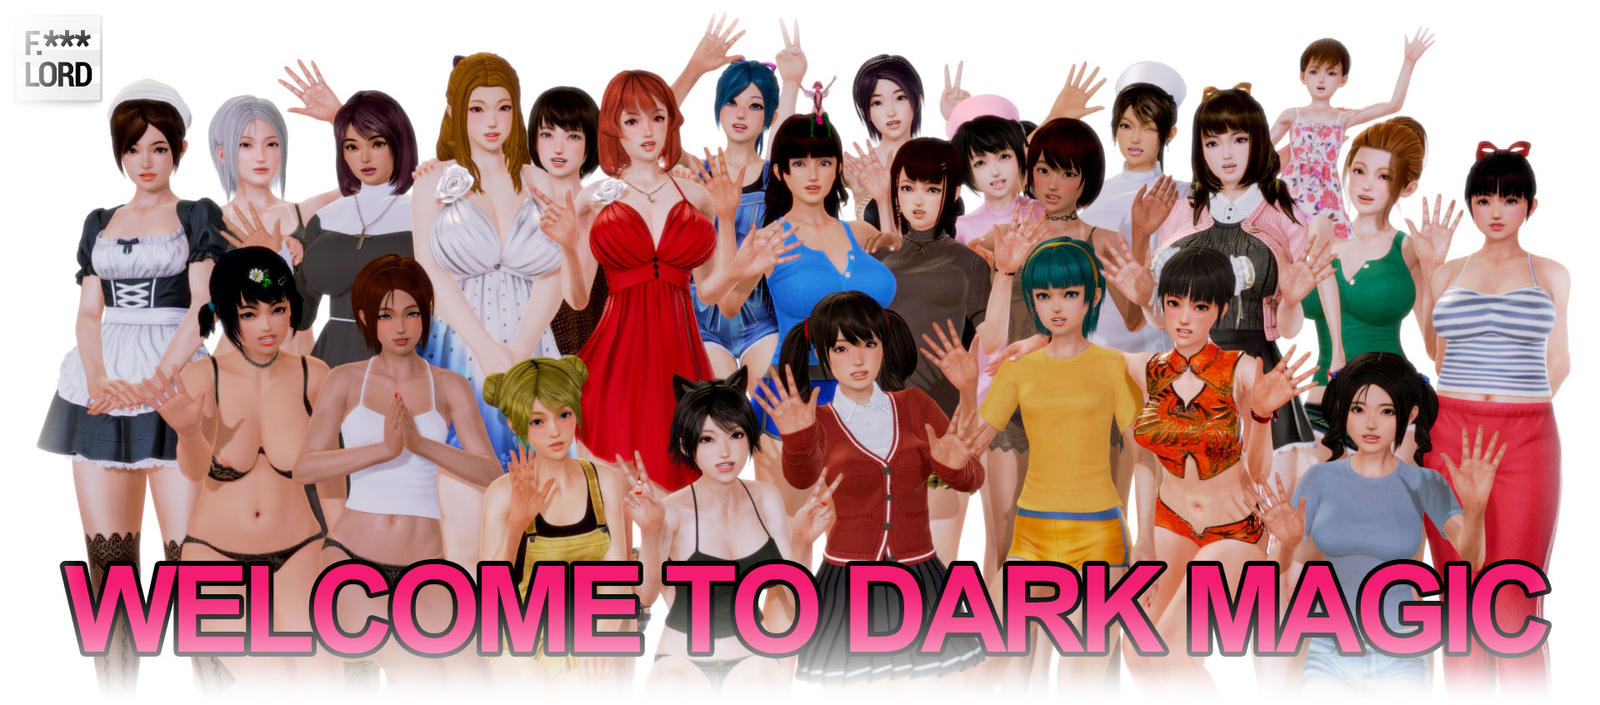 welcome-to-dark-magic-jpg-jpg-jpg-jpg-jpg-jpg.jpg